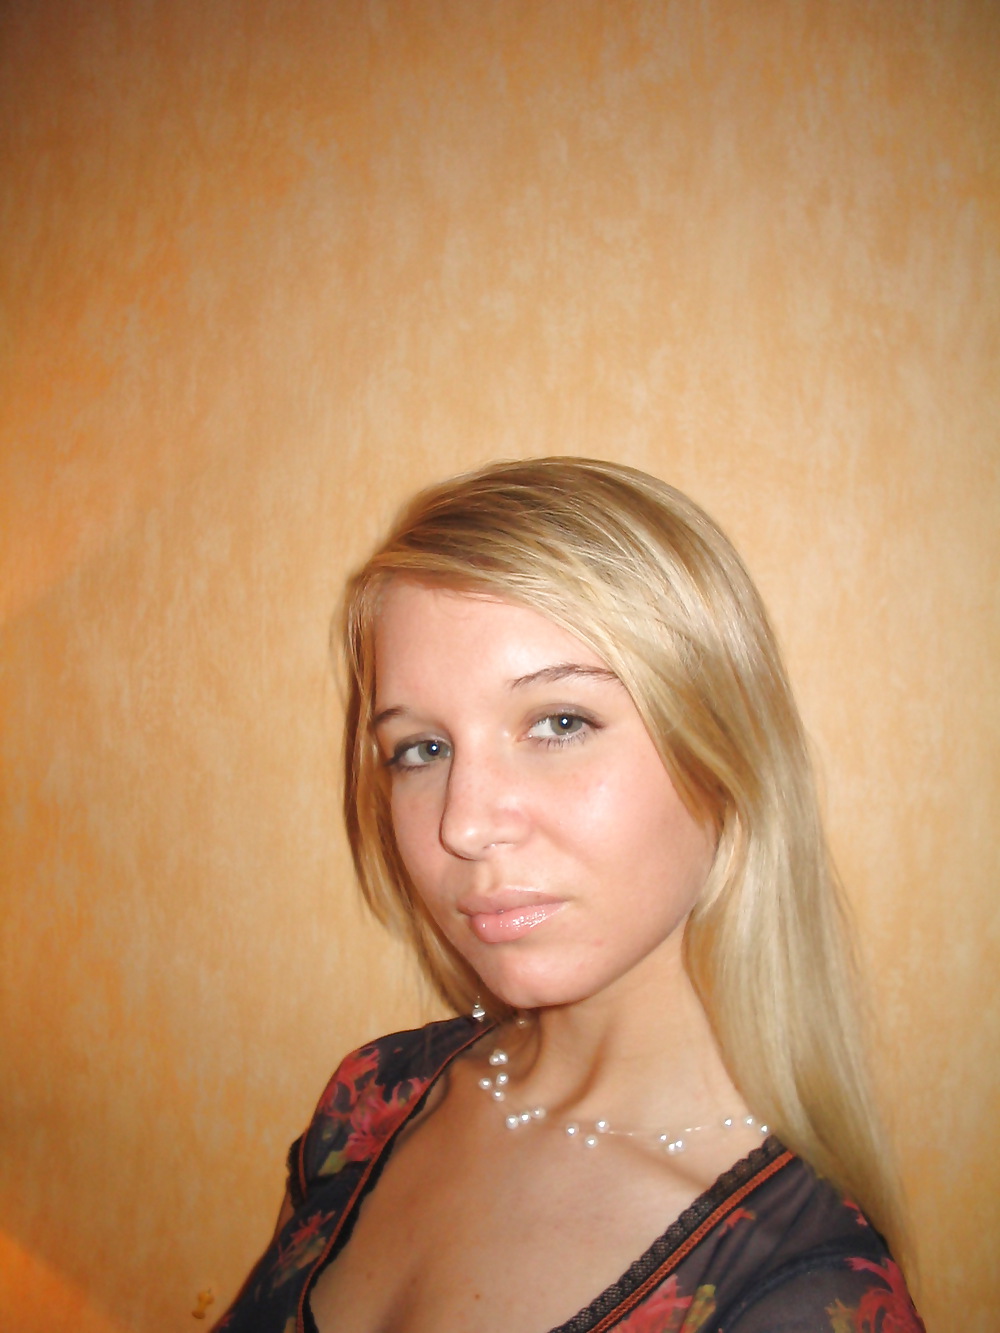 Hot ex russian teen girlfriend #7485004